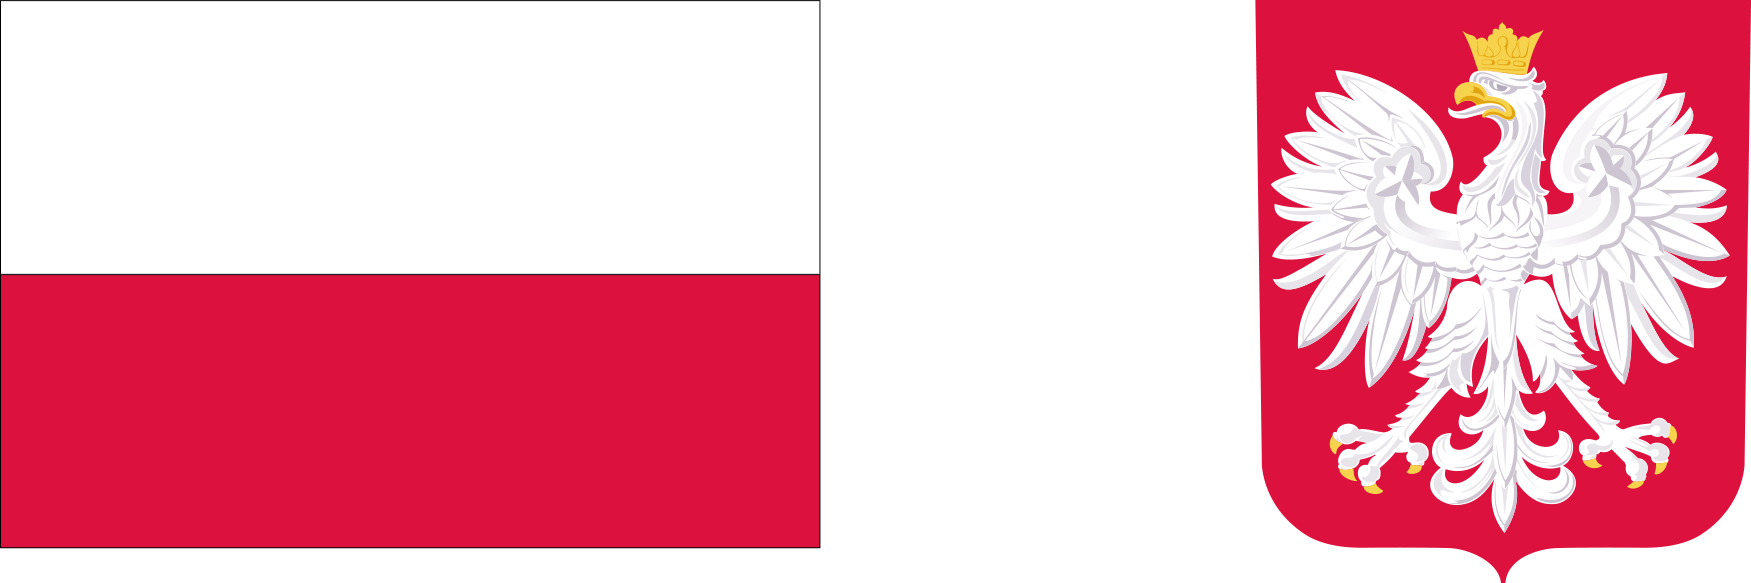 Flaga polski oraz godło